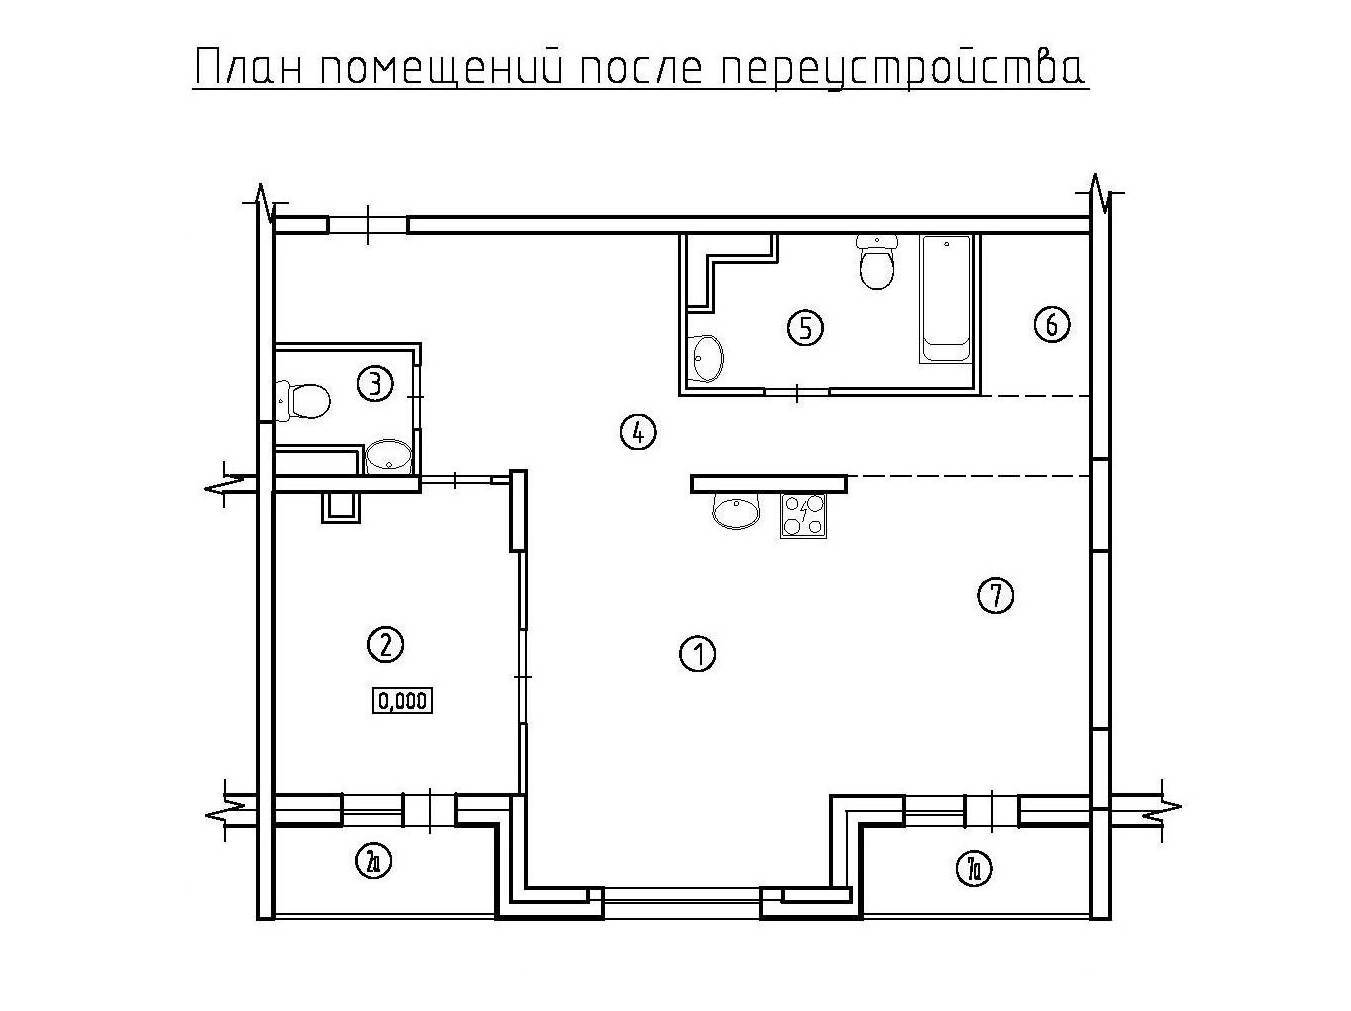 Ремонт маленькой кухни на примере 10 квартир (70+ фото, видео)